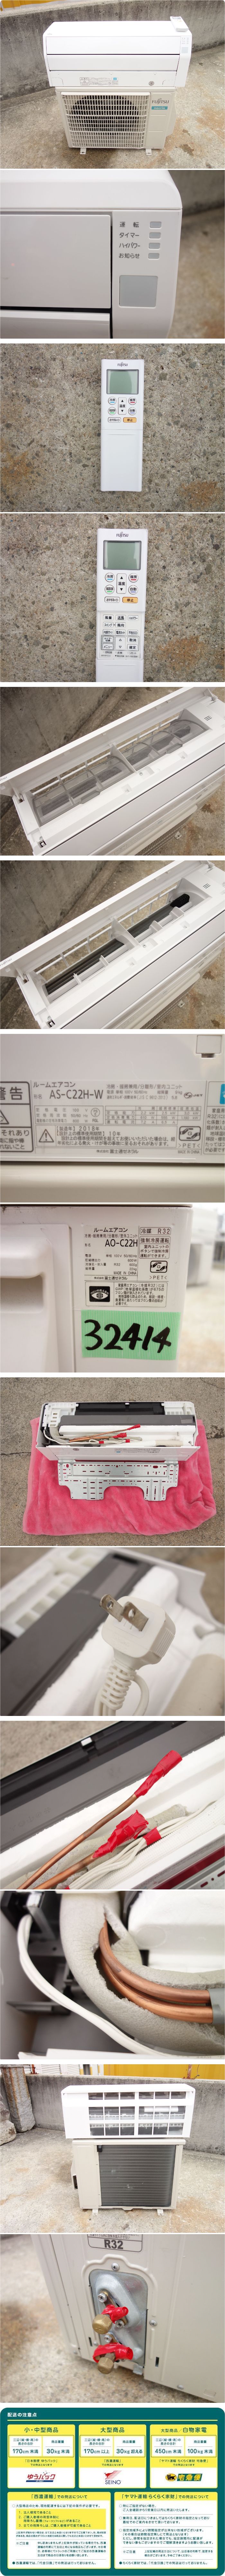 くつろぎカフェタイム K▽富士通 エアコン 2.2kw ～8畳 AS-C22H (32414